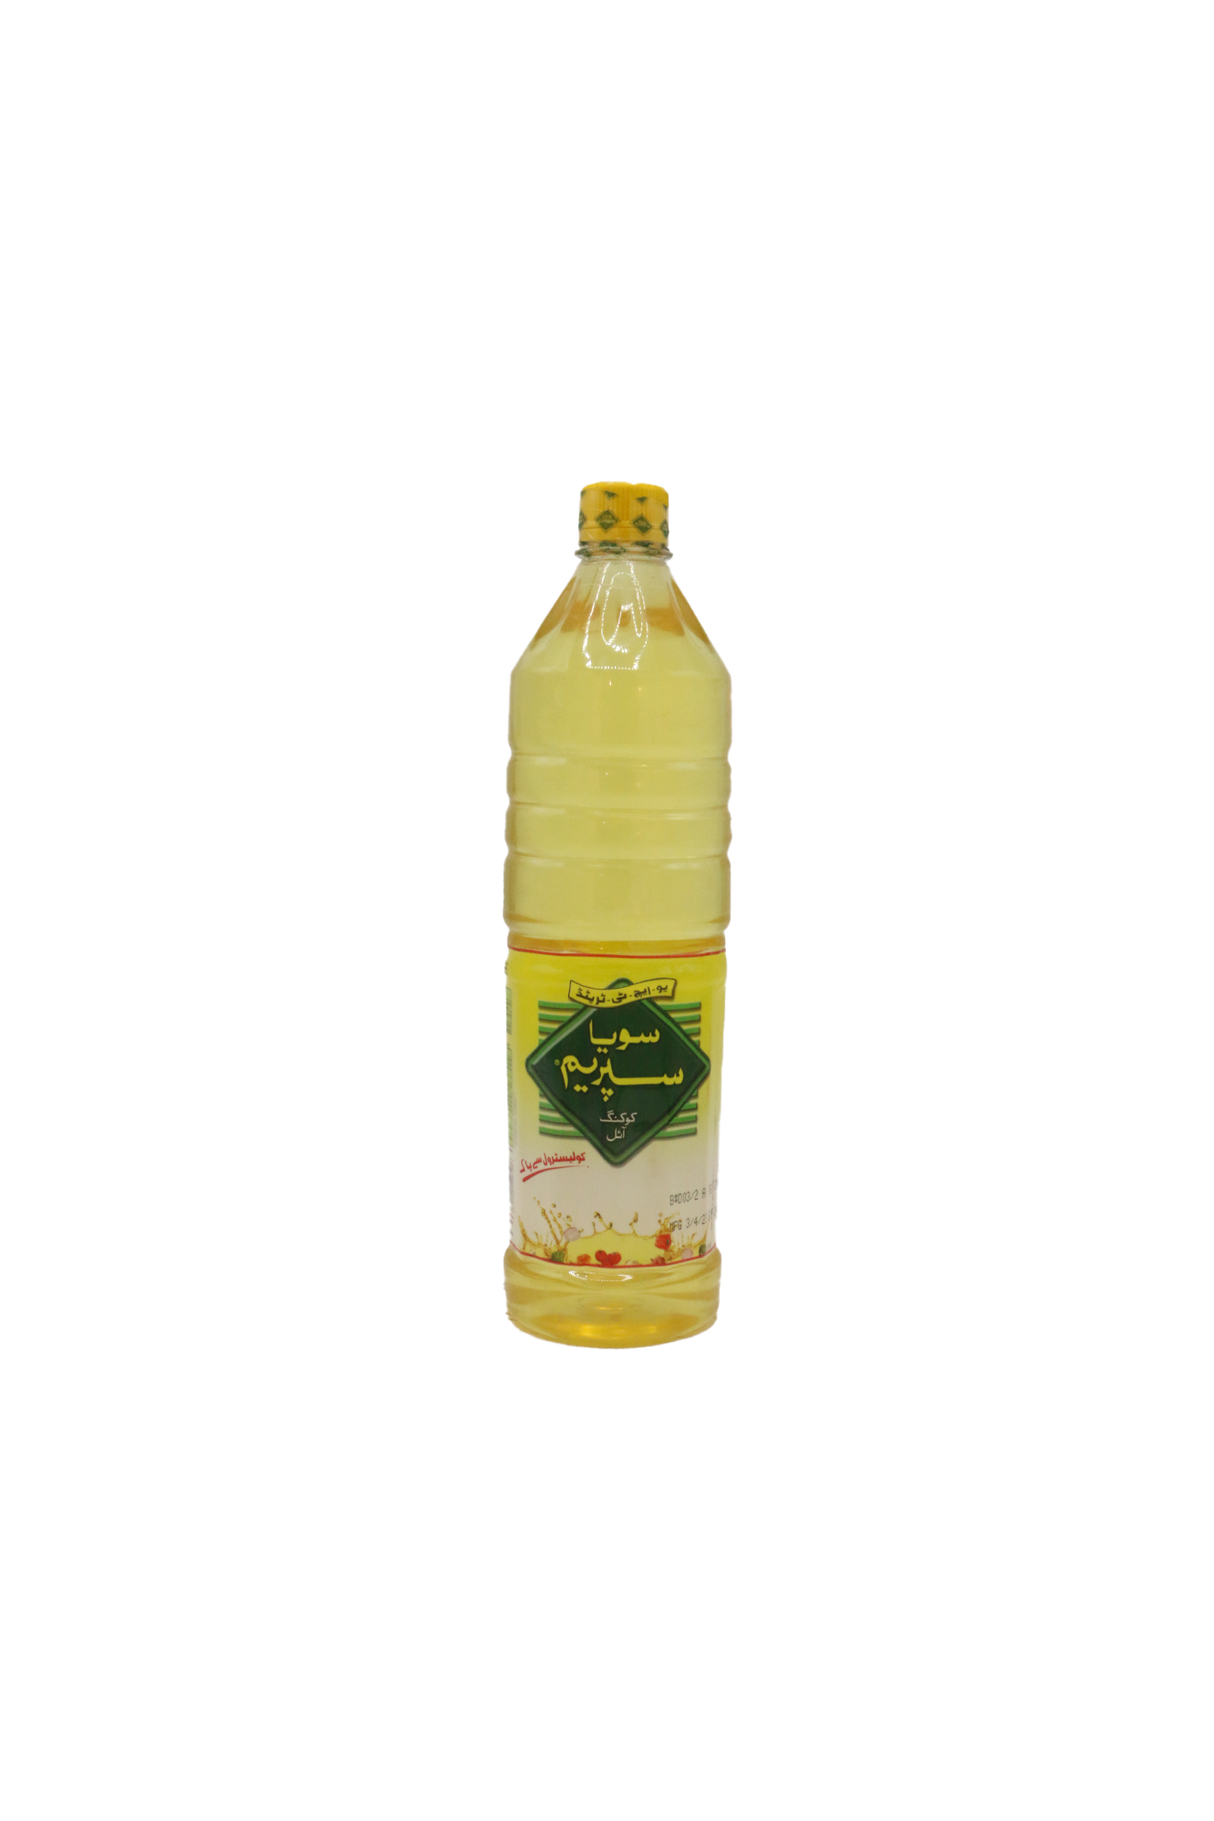 soya supreme cooking oil 1l bottle